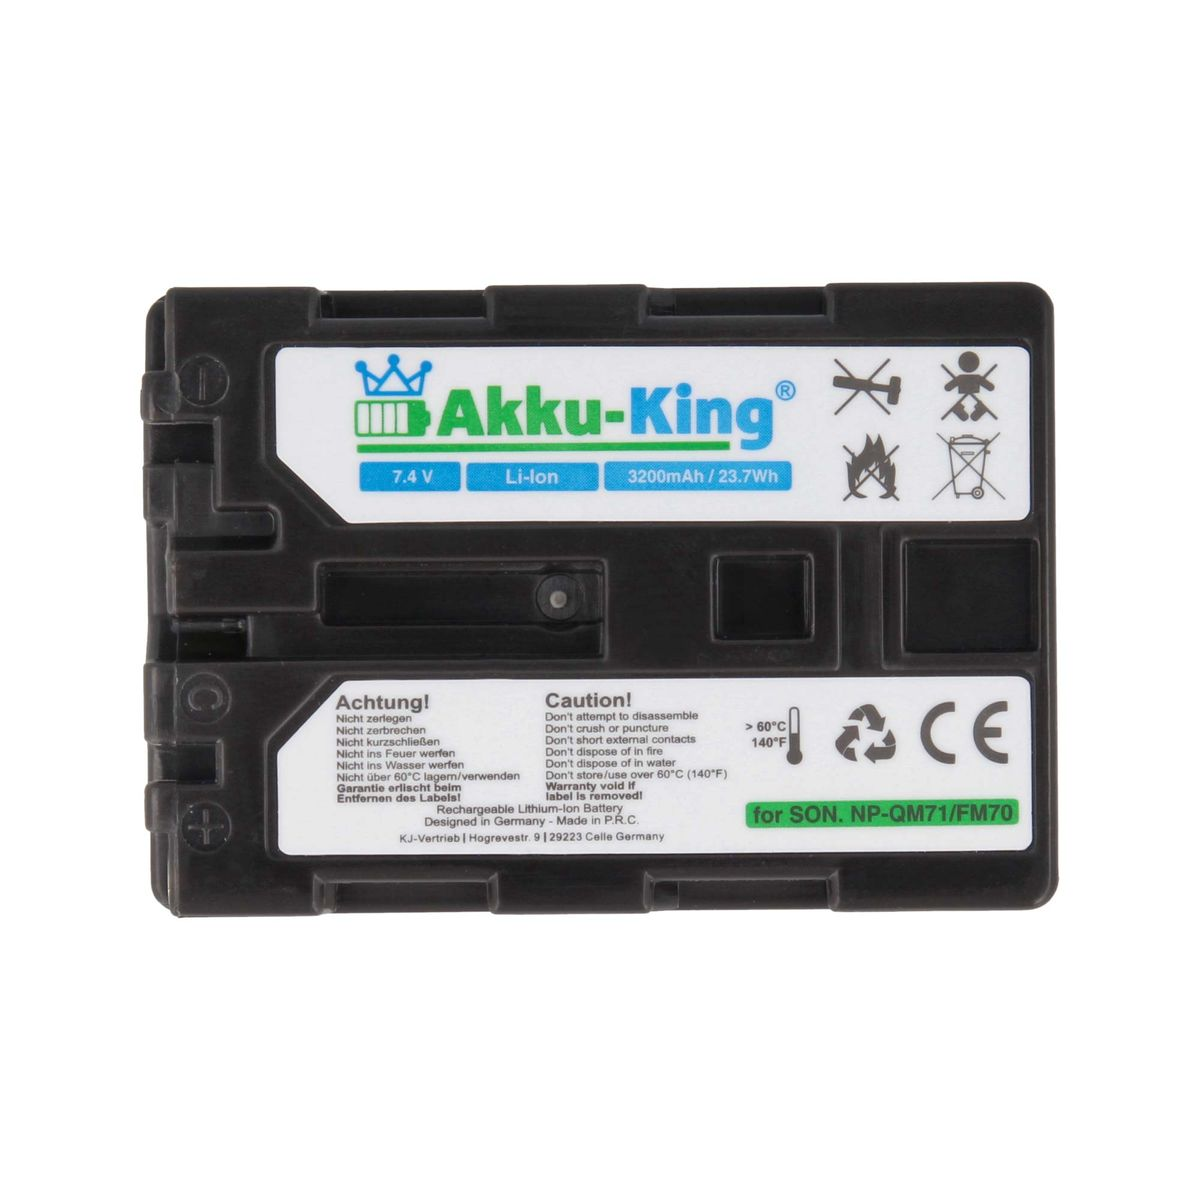 AKKU-KING Akku kompatibel mit Volt, NP-QM51 Kamera-Akku, 7.4 Li-Ion Sony 3200mAh